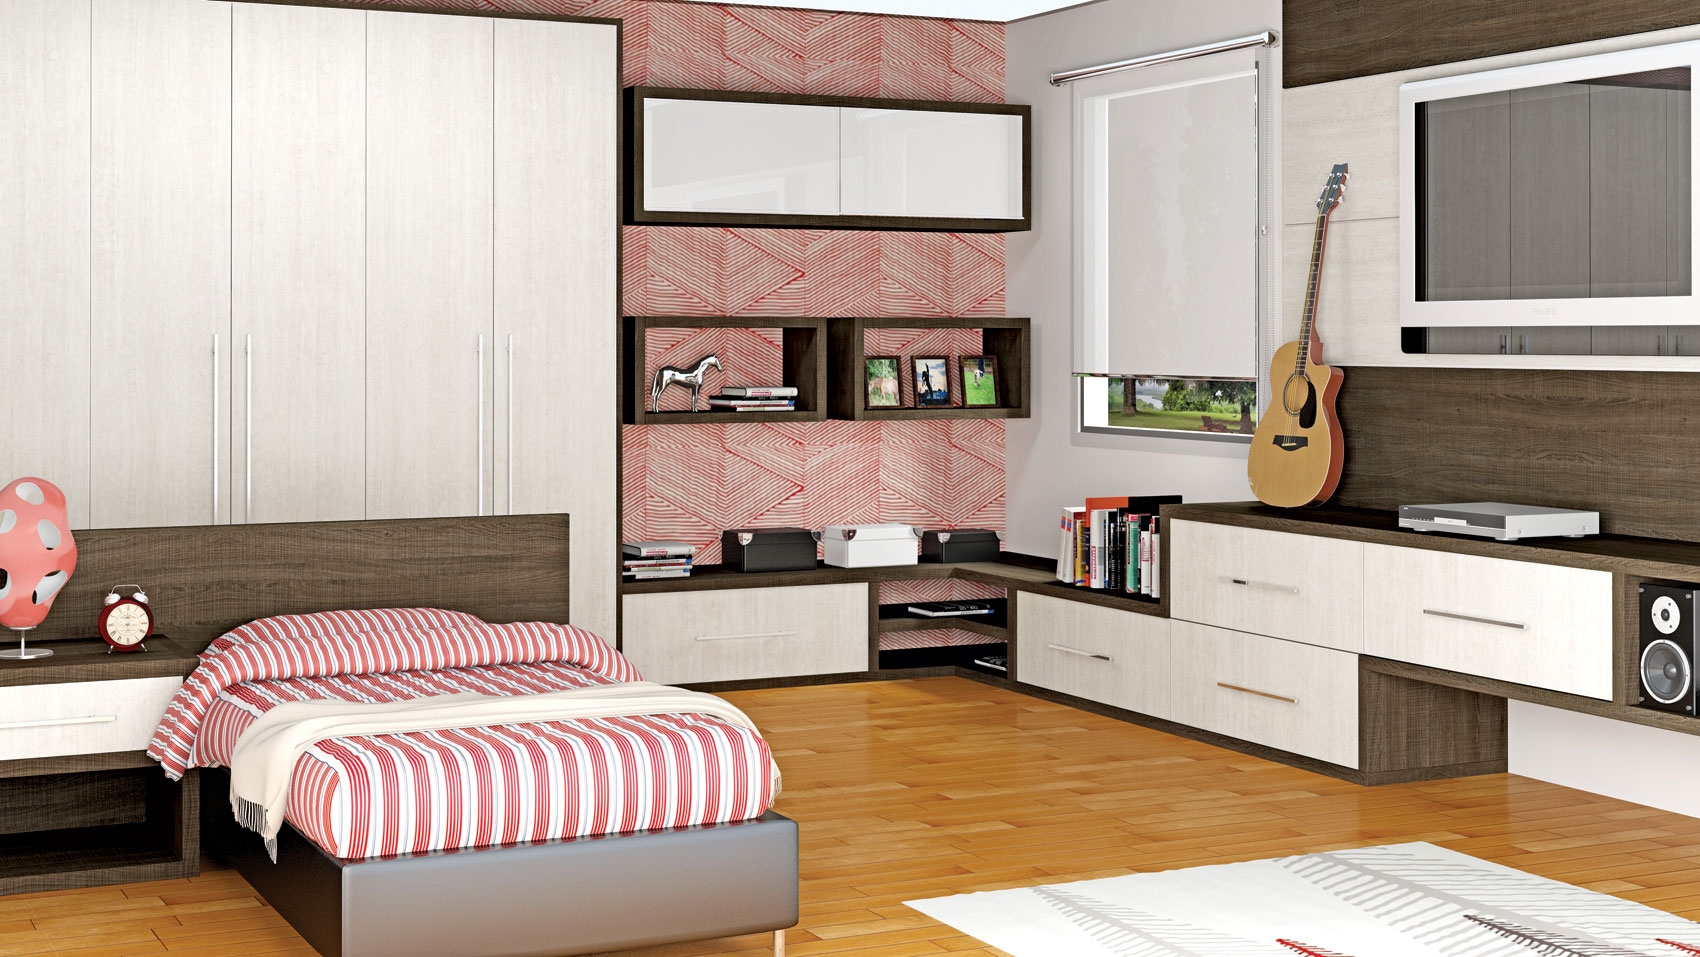 Dormitório Planejado de Solteiro na Macedo - Dormitório Planejado Infantil